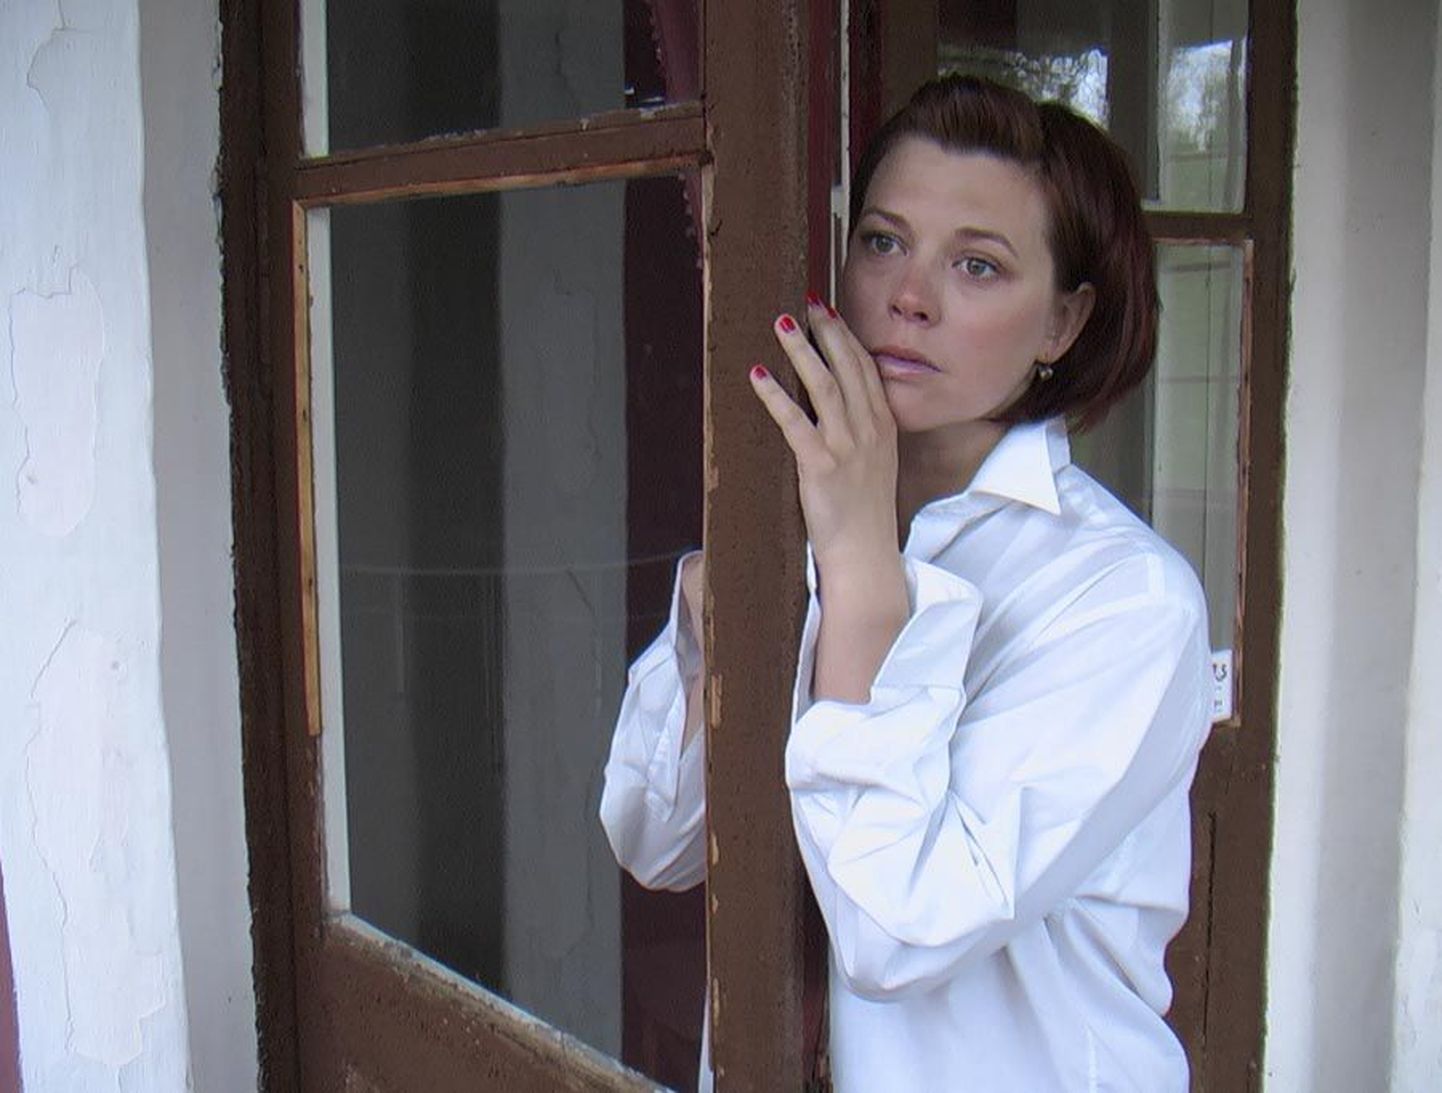 Ugala näitleja Carita Vaikjärv mängib Õisu mõisas etenduvas suvelavastuses «Petmine» kunstigalerist Emmat, kes satub kirglikku armukolmnurka.